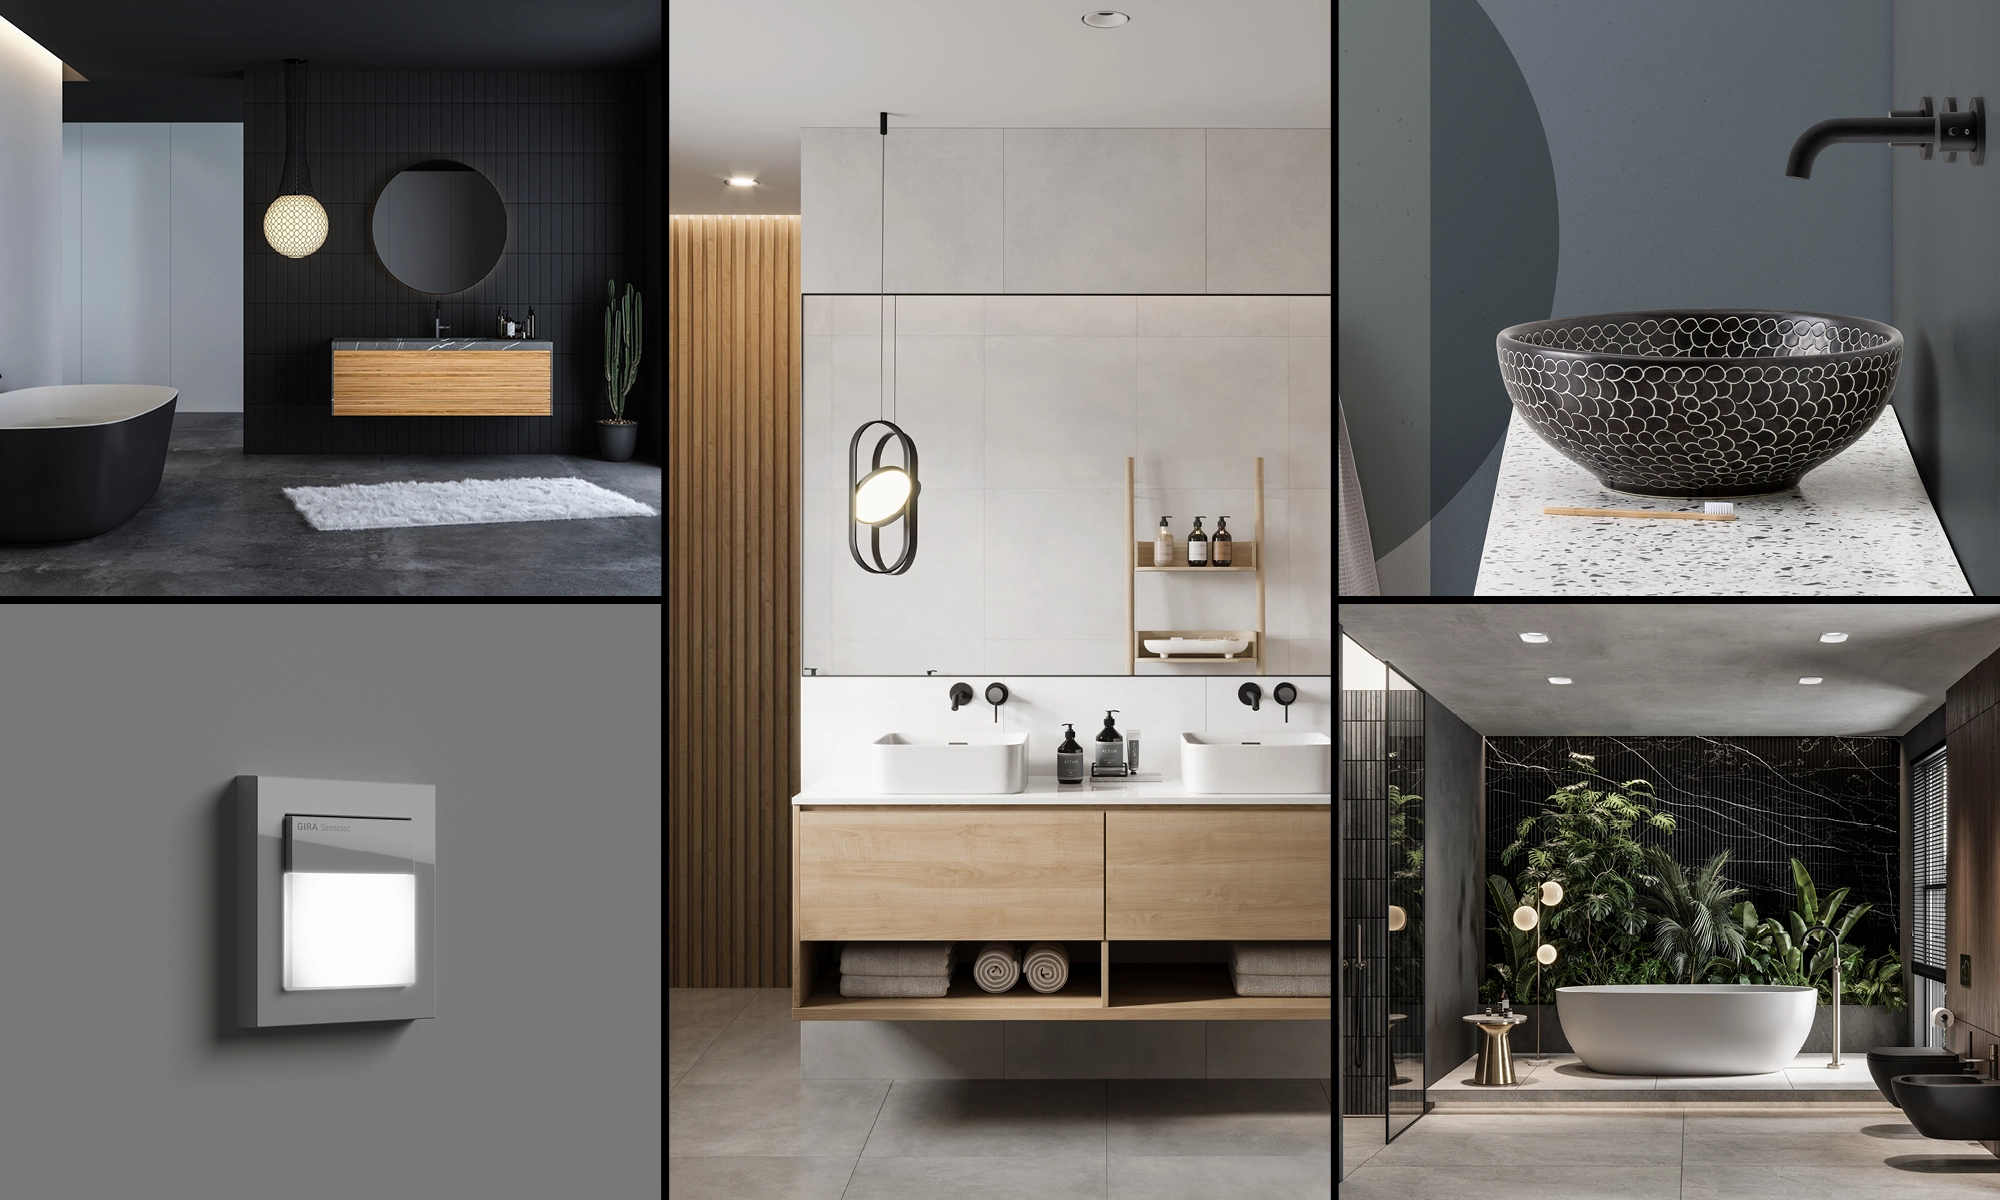 Verschiedene Badezimmerdesigns zeigen aktuelle Badezimmertrends mit minimalistischen und naturinspirierten Elementen.